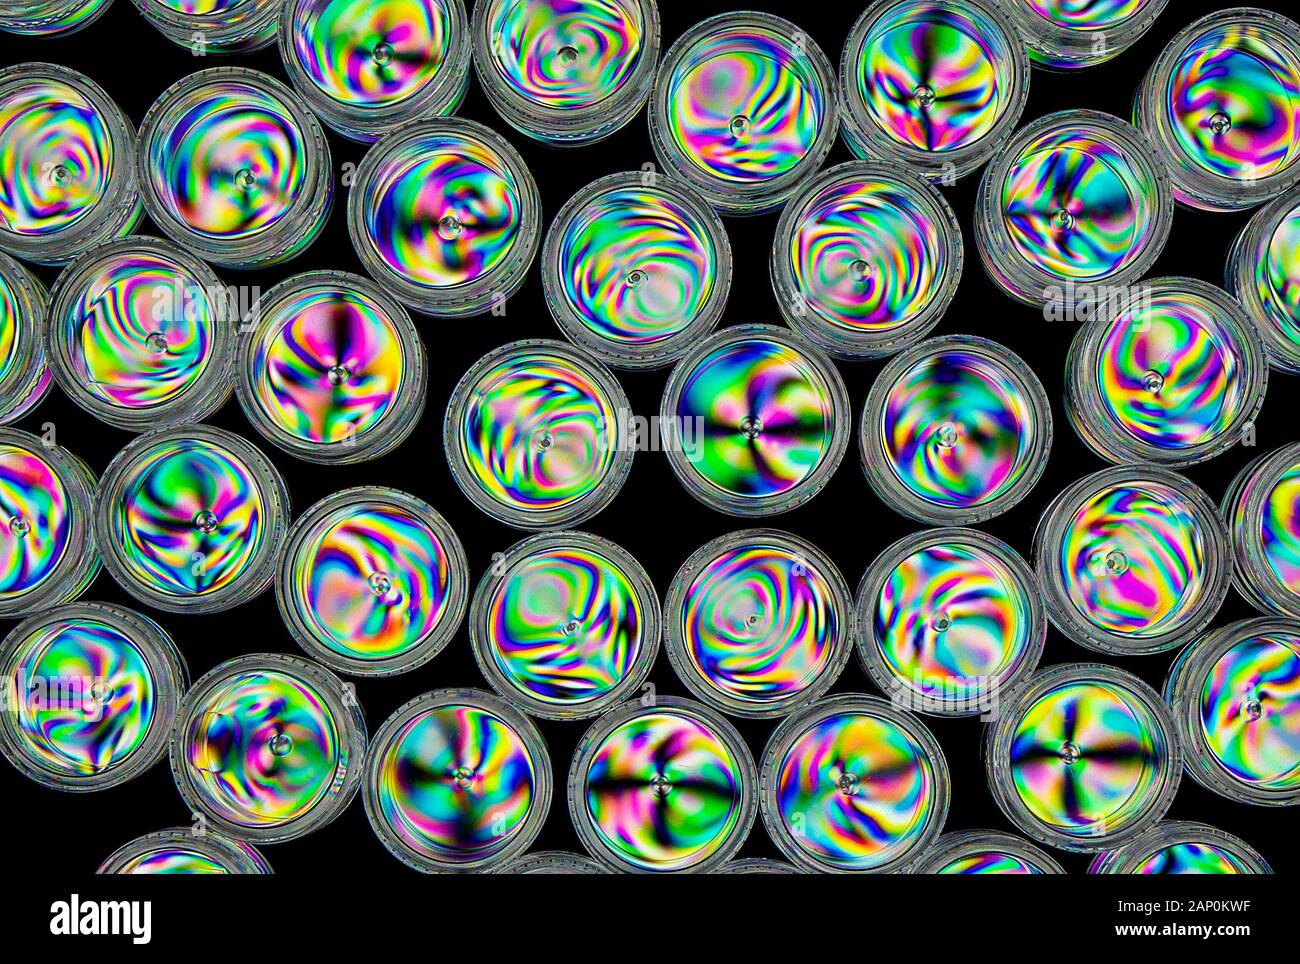 Motifs de contrainte colorés en plastique dur, révélés par l'imagerie entre deux filtres polarisants croisés. Banque D'Images